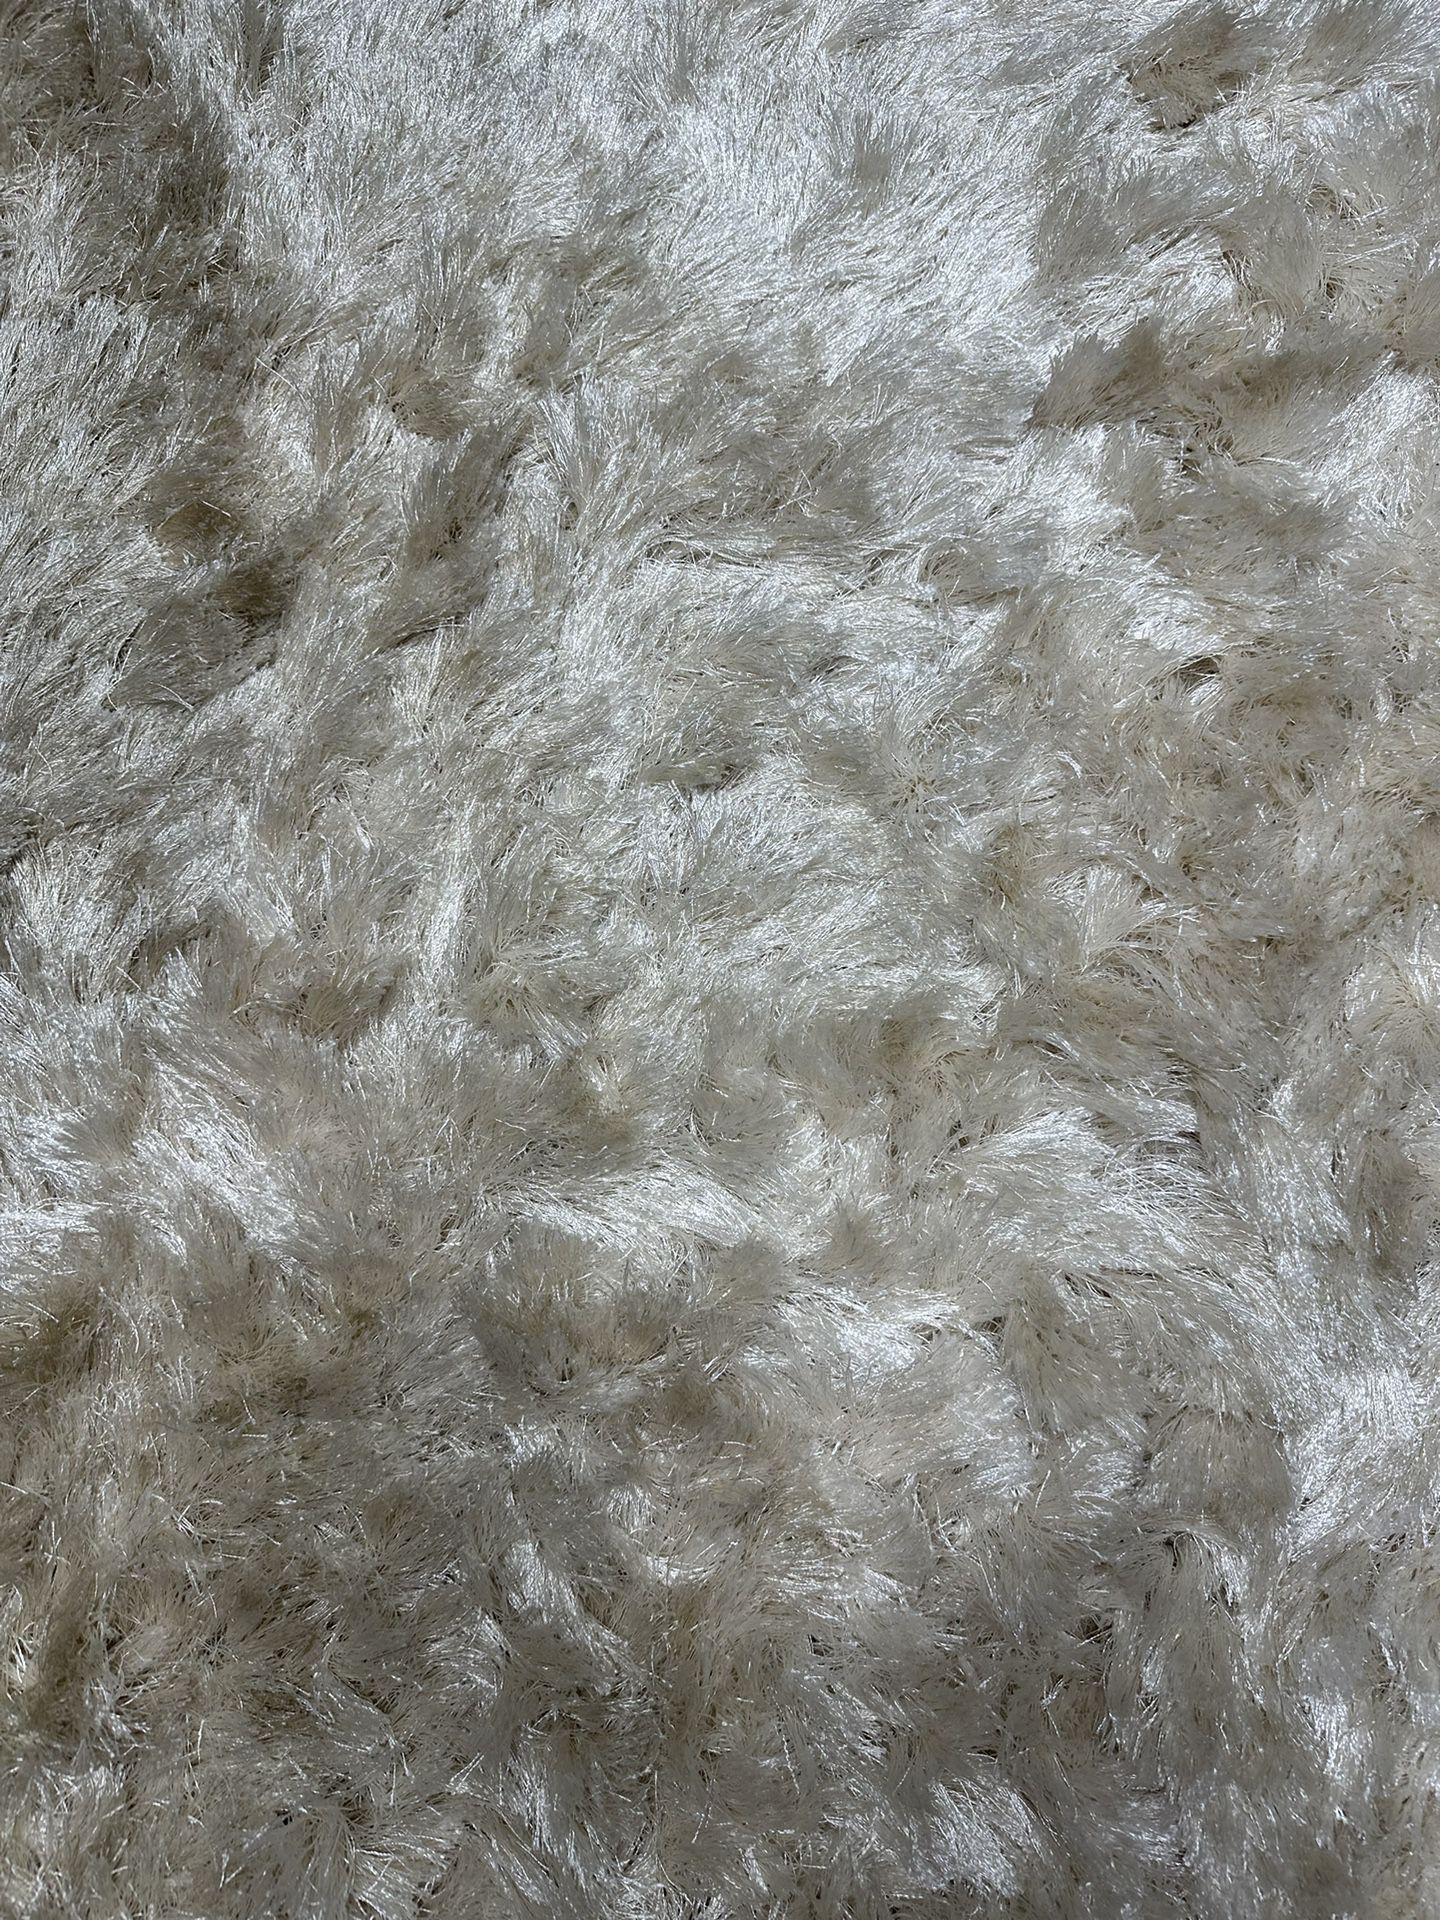 Silky texture shag rug 5’x7’ color: Ivory 